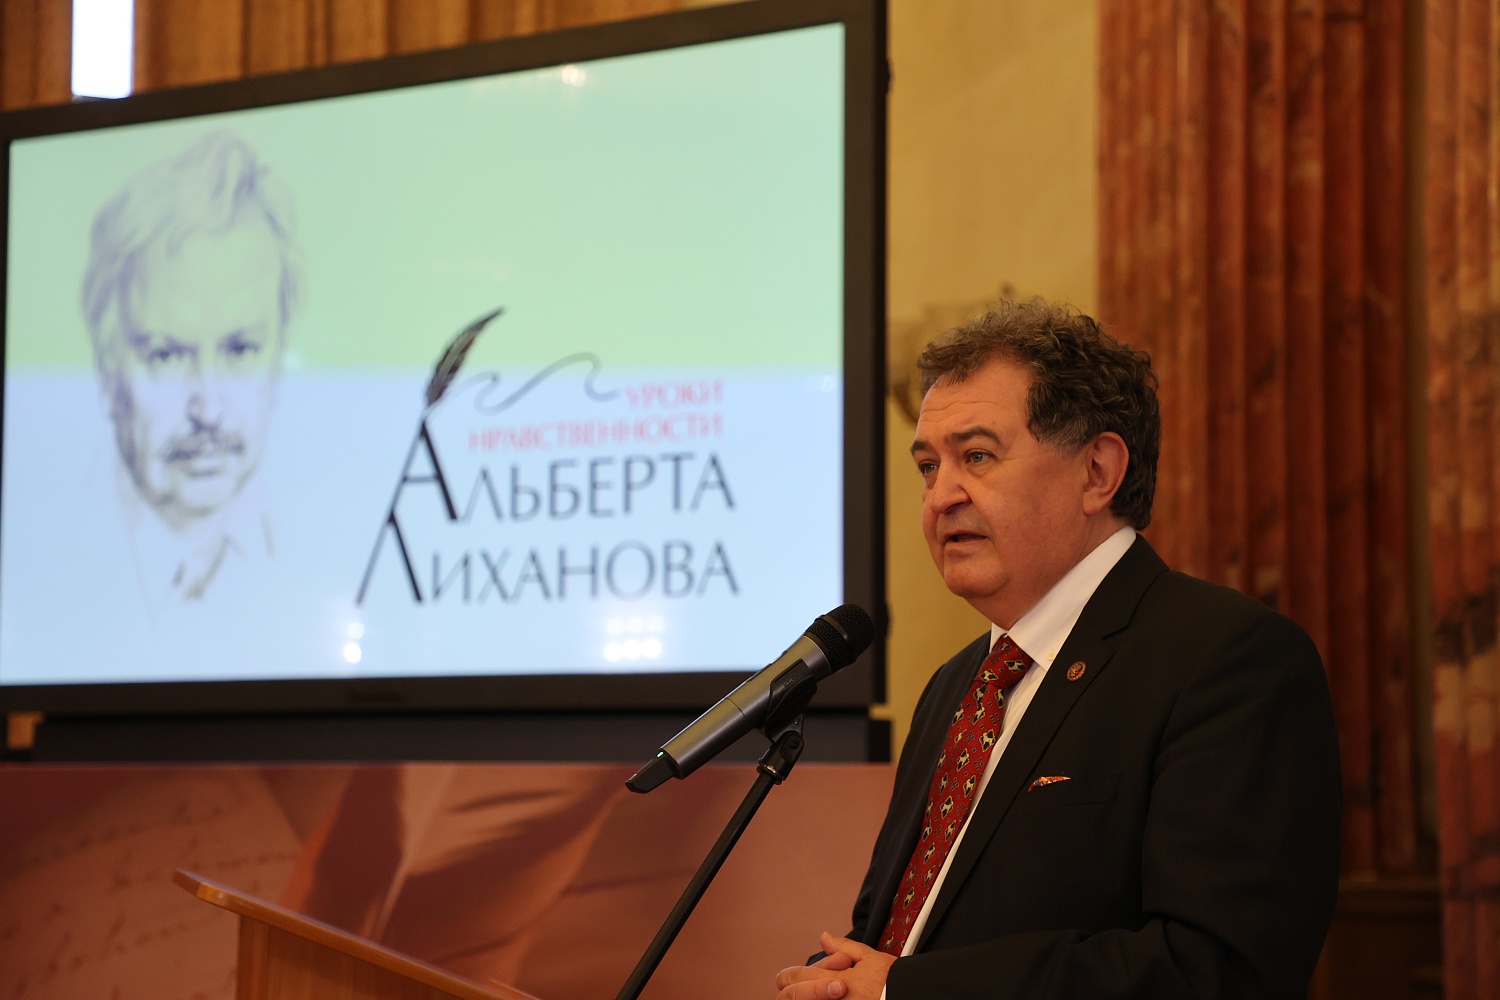 Вечер памяти Альберта Лиханова состоялся в Москве